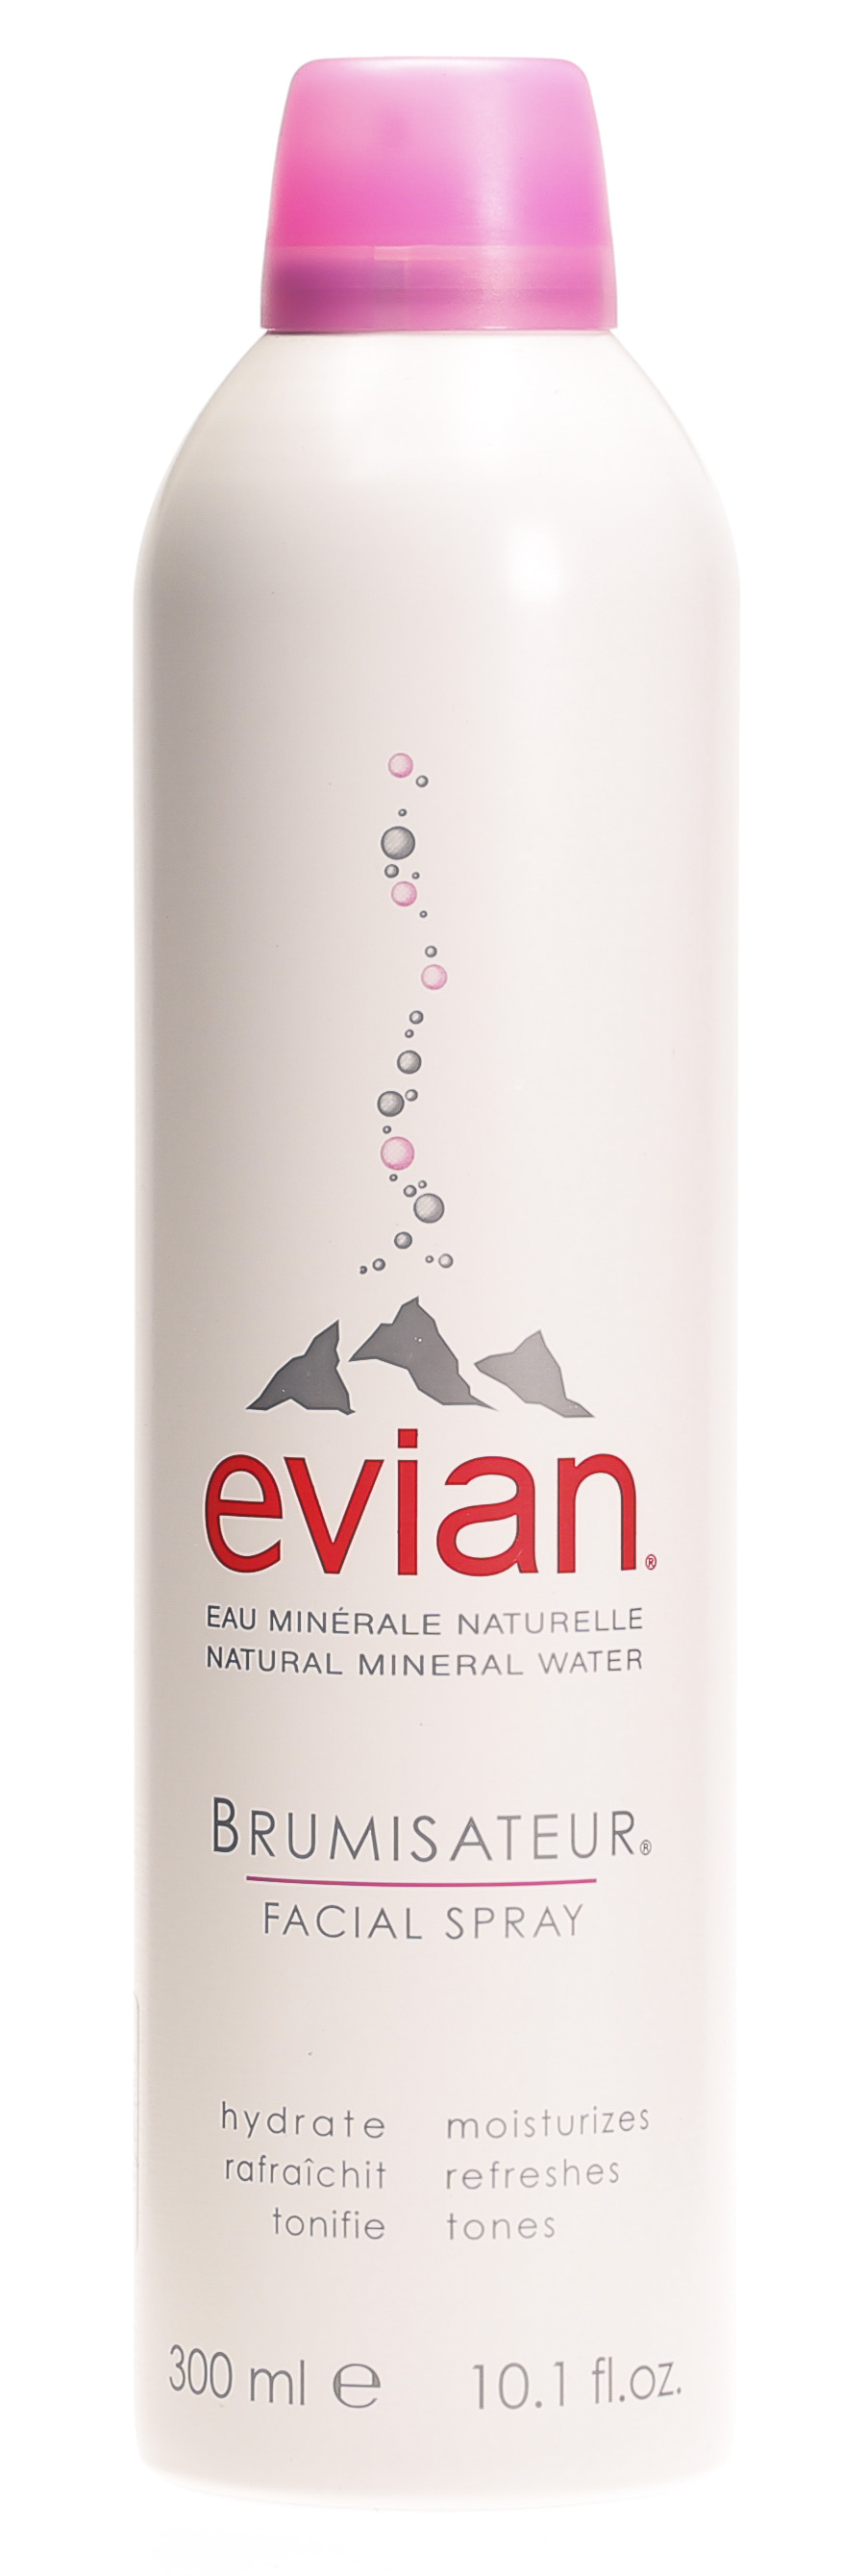 Brumisateur eau thermale minérale Evian - 50ml